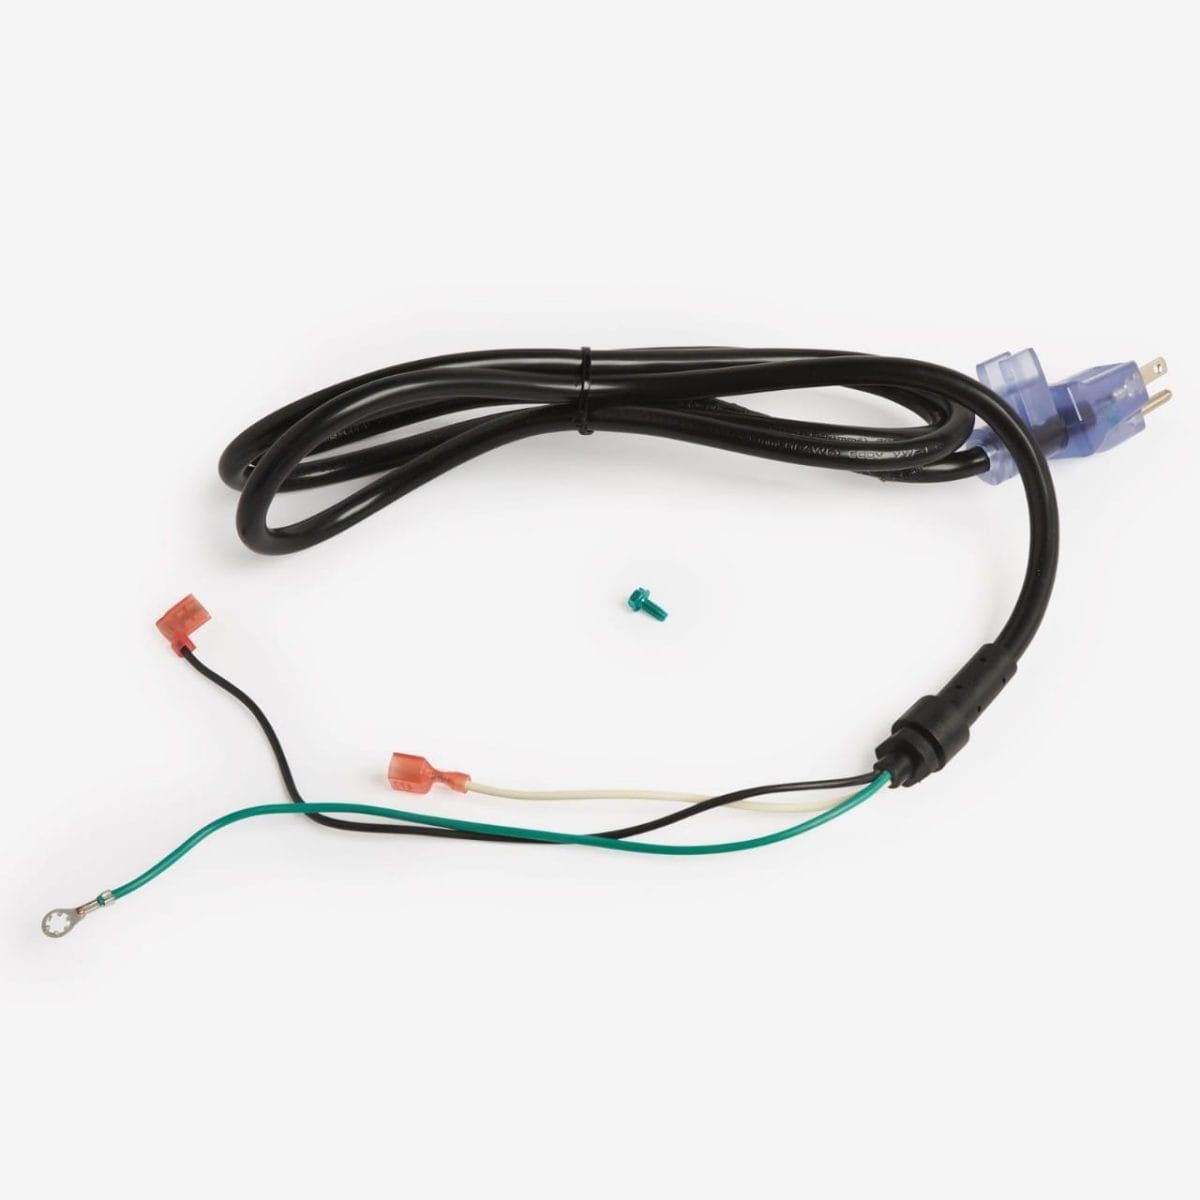 Graco 390 Power Cord Repair Kit